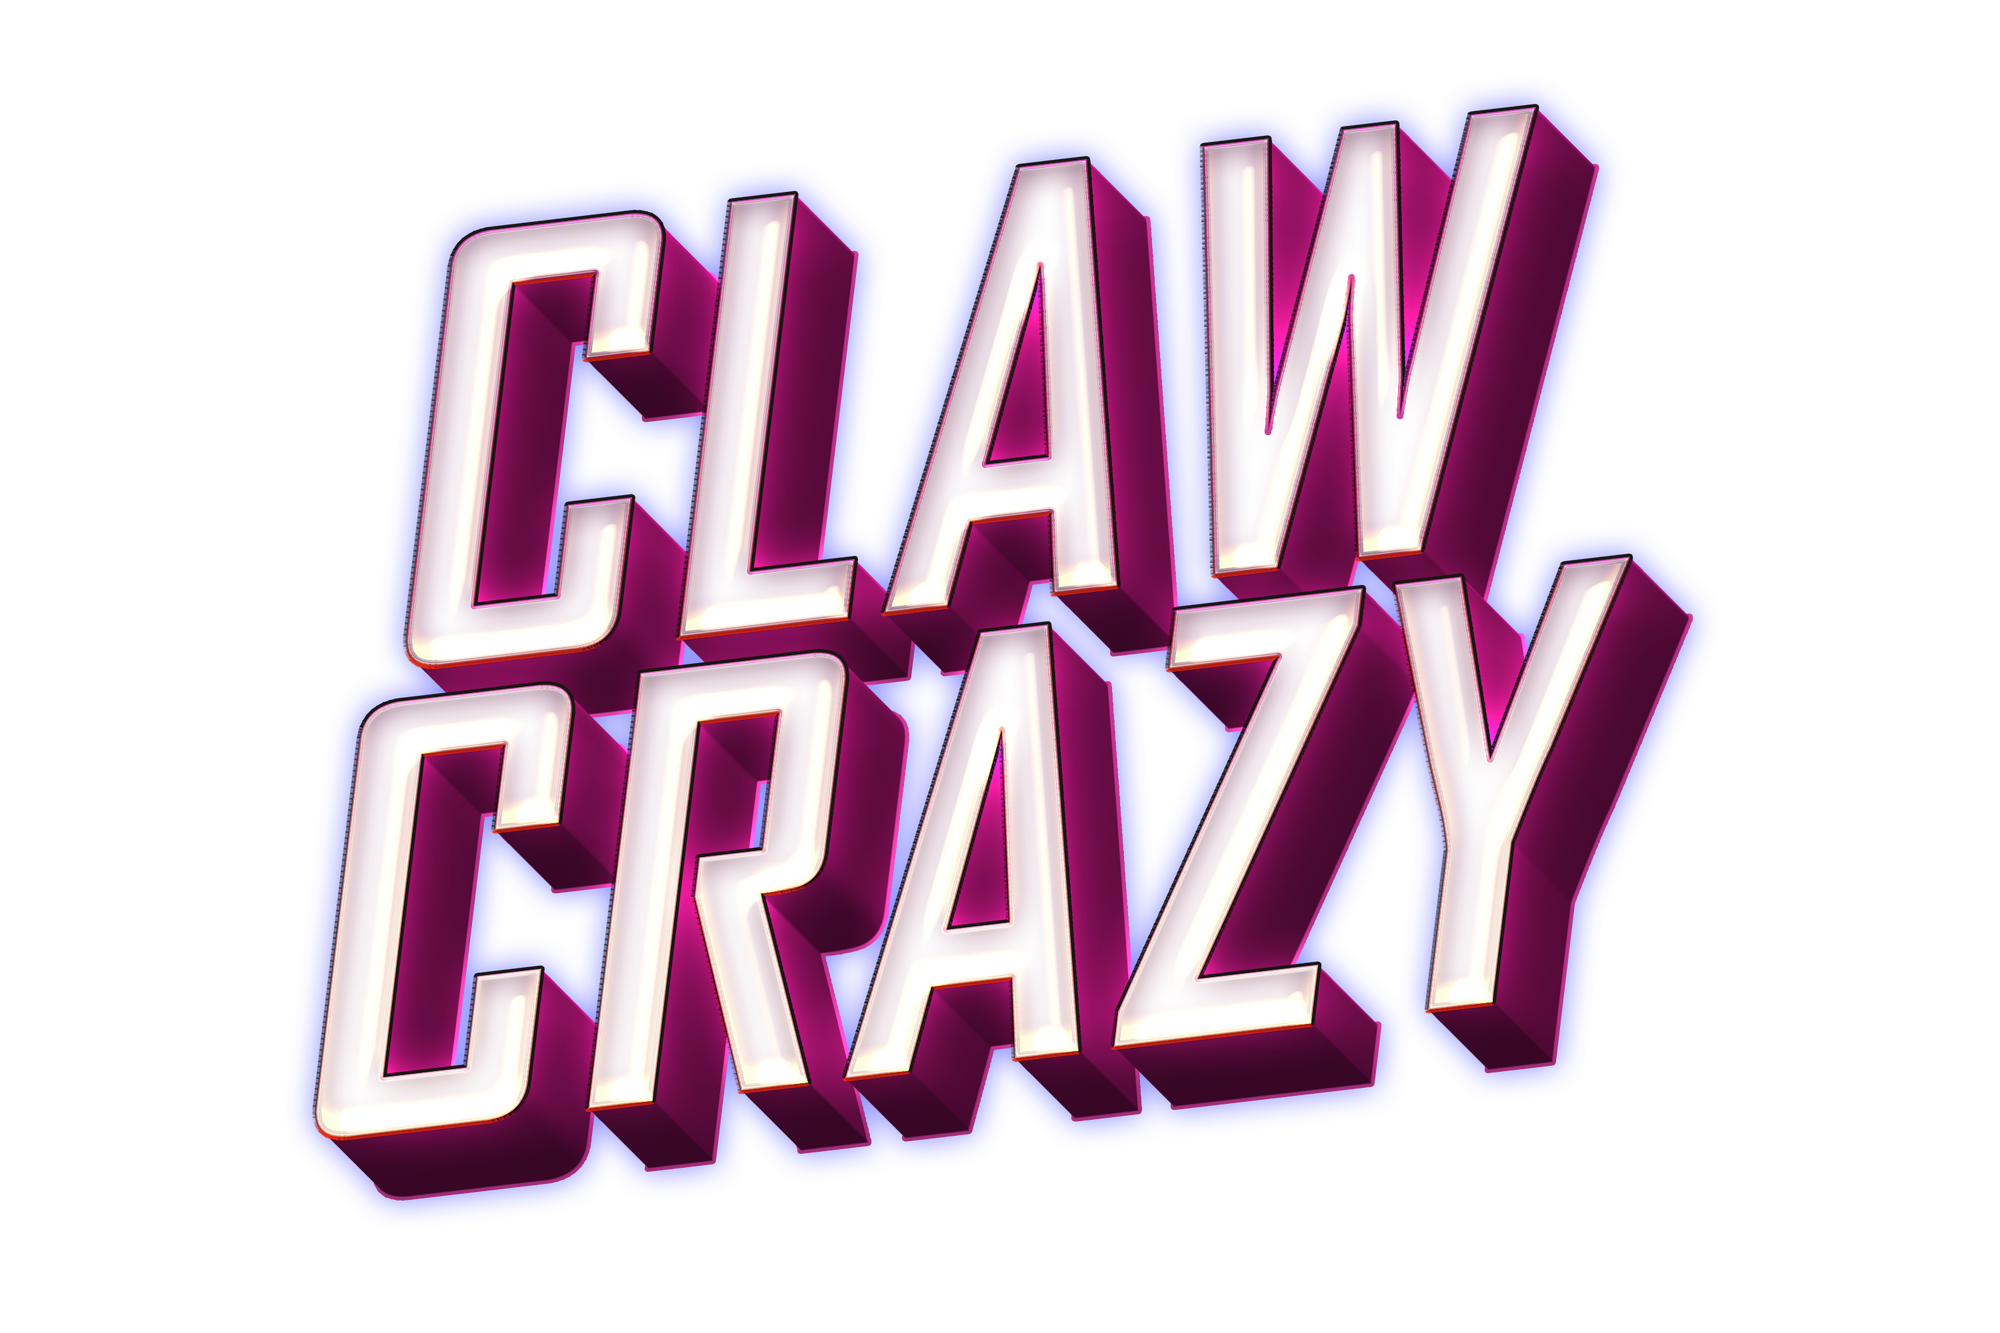 ClawCrazy